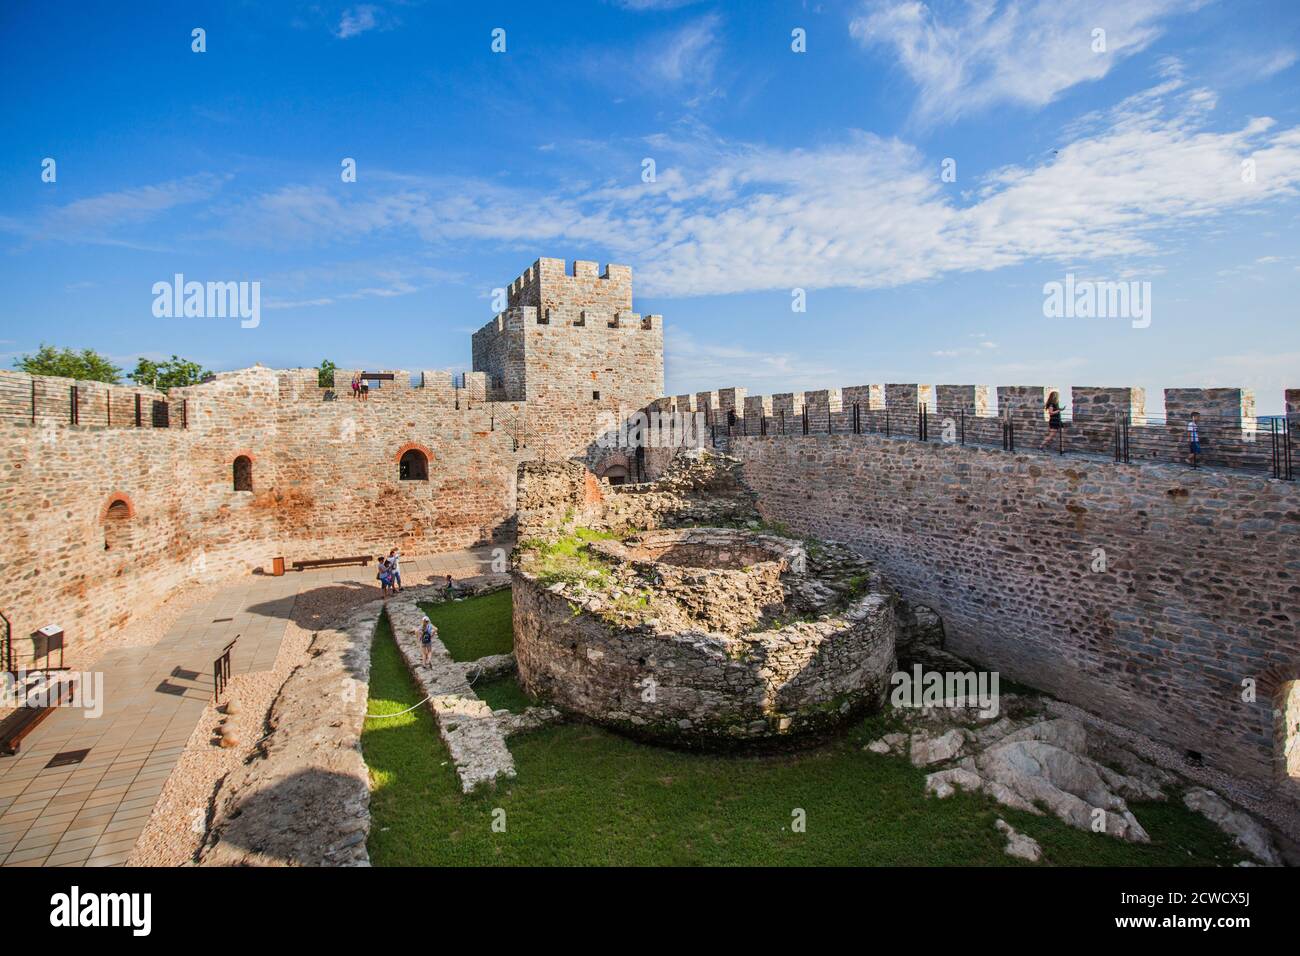 Kulturerbe, mittelalterliche RAM-Festung, alte osmanische Festung, Grenzbefestigung am Ufer der Donau, Ostserbien, Europa Stockfoto